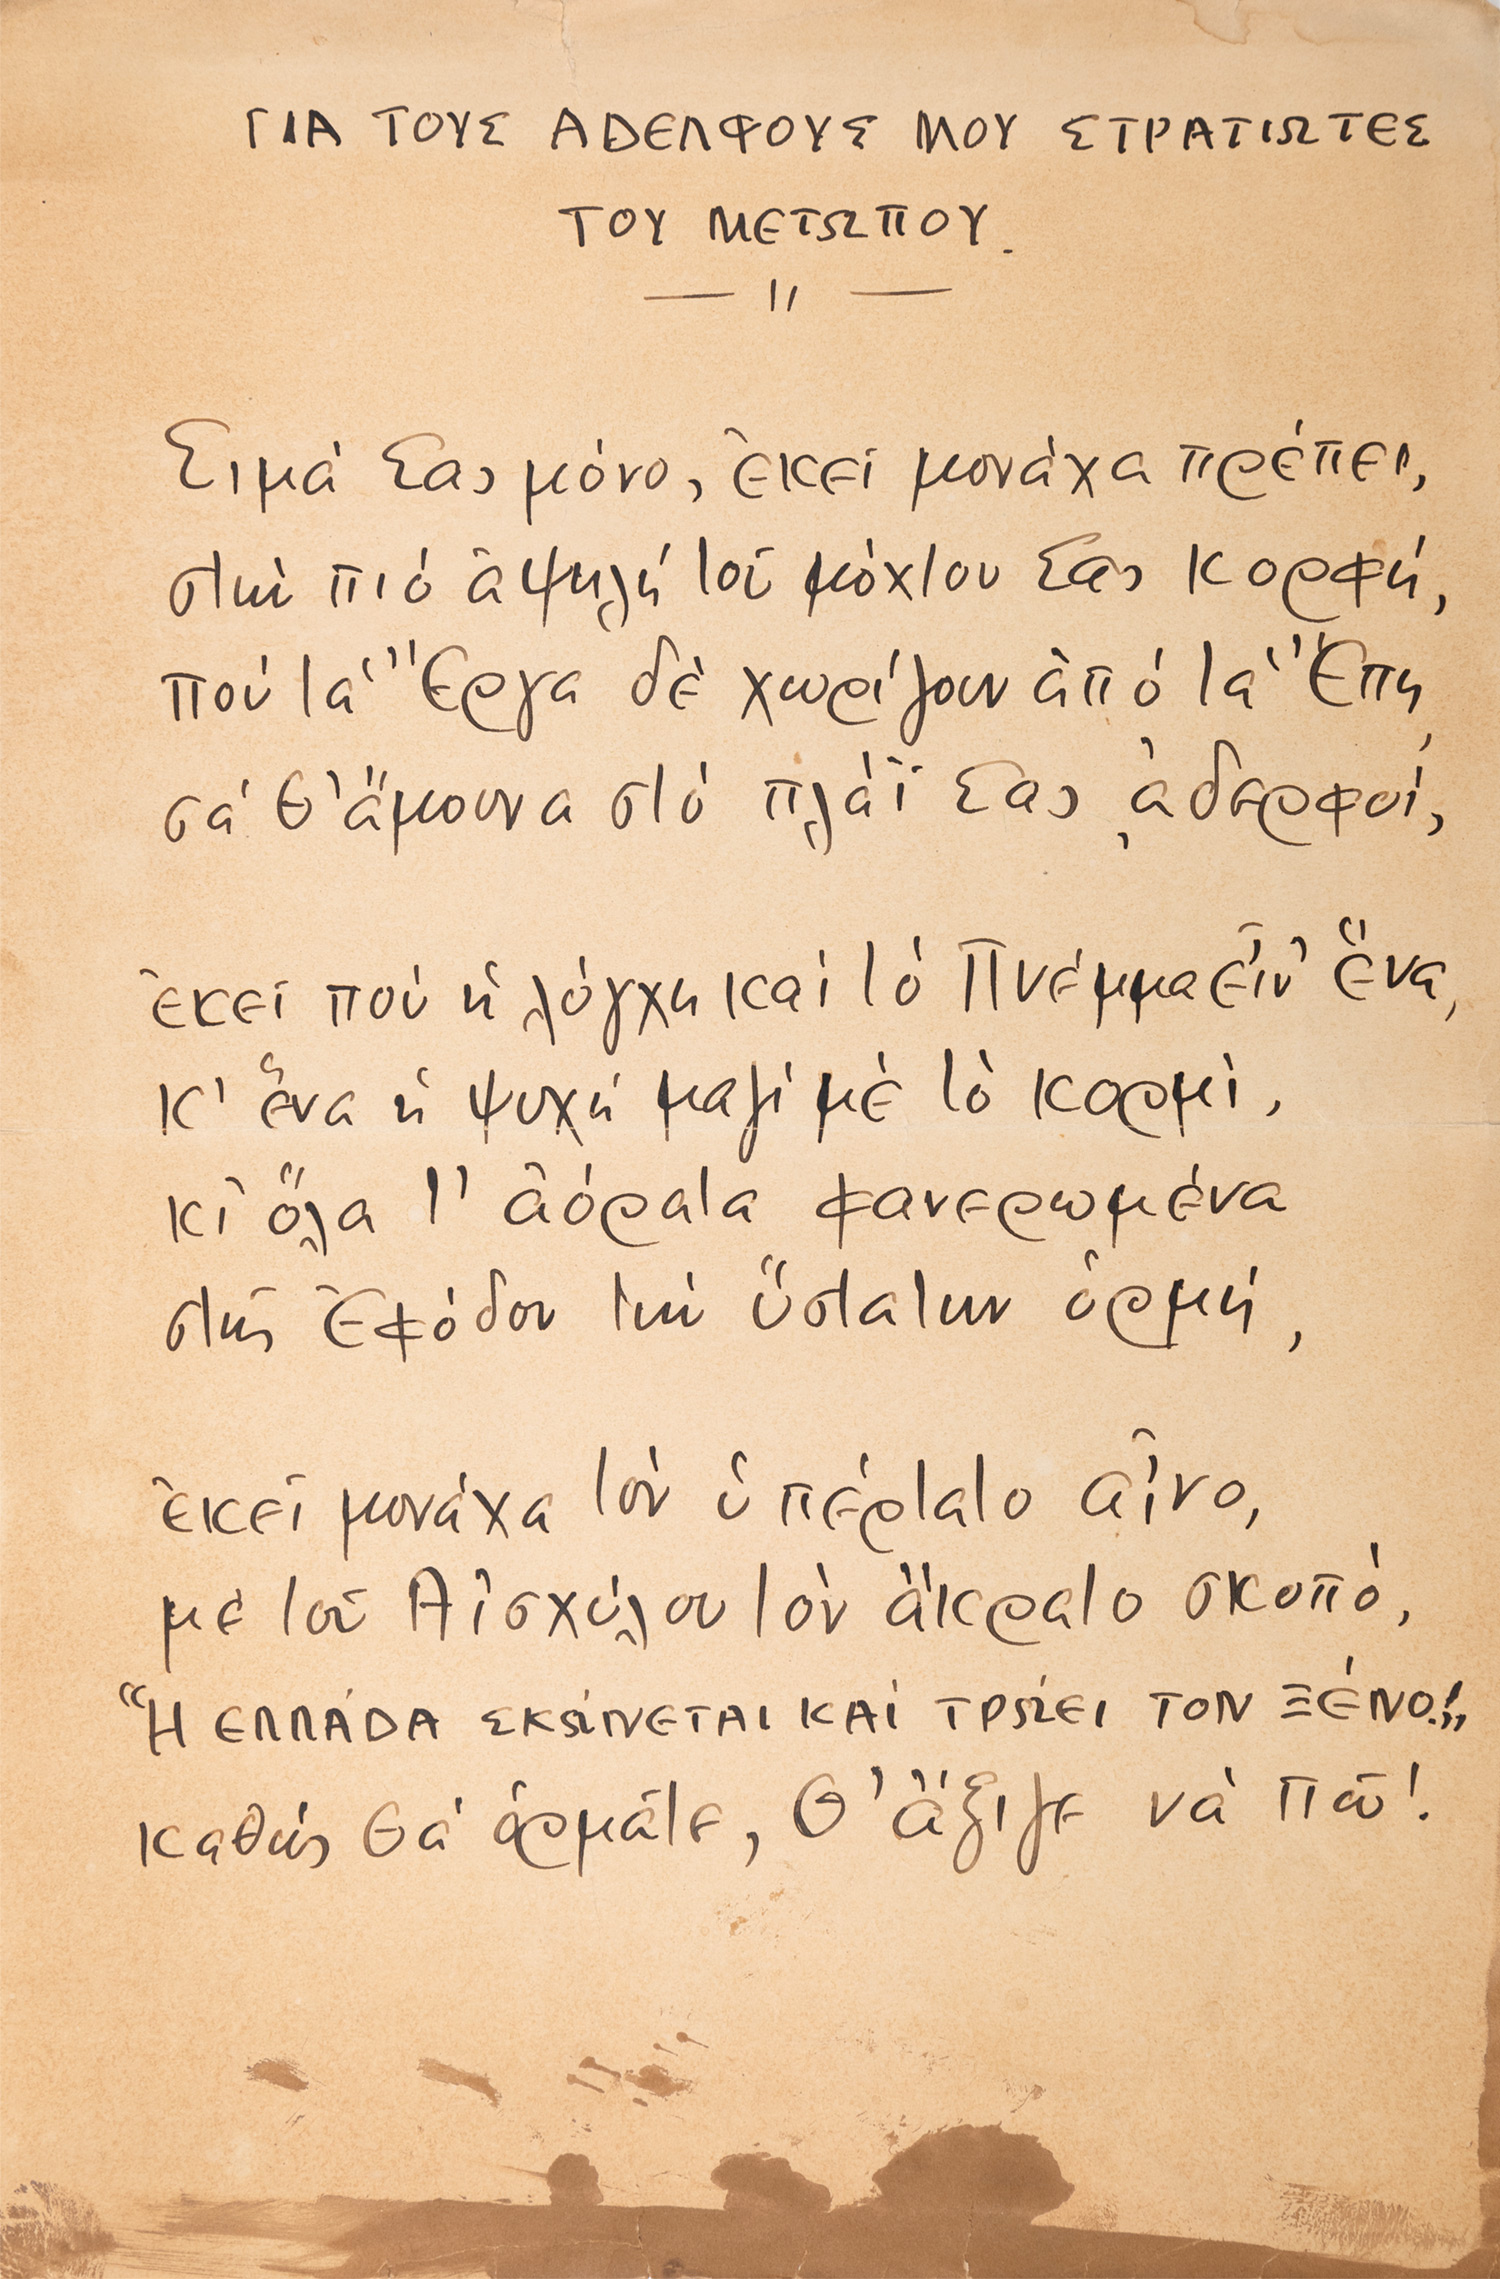 ΣΙΚΕΛΙΑΝΟΣ, Άγγελος, 1884-1951, ποιητής.